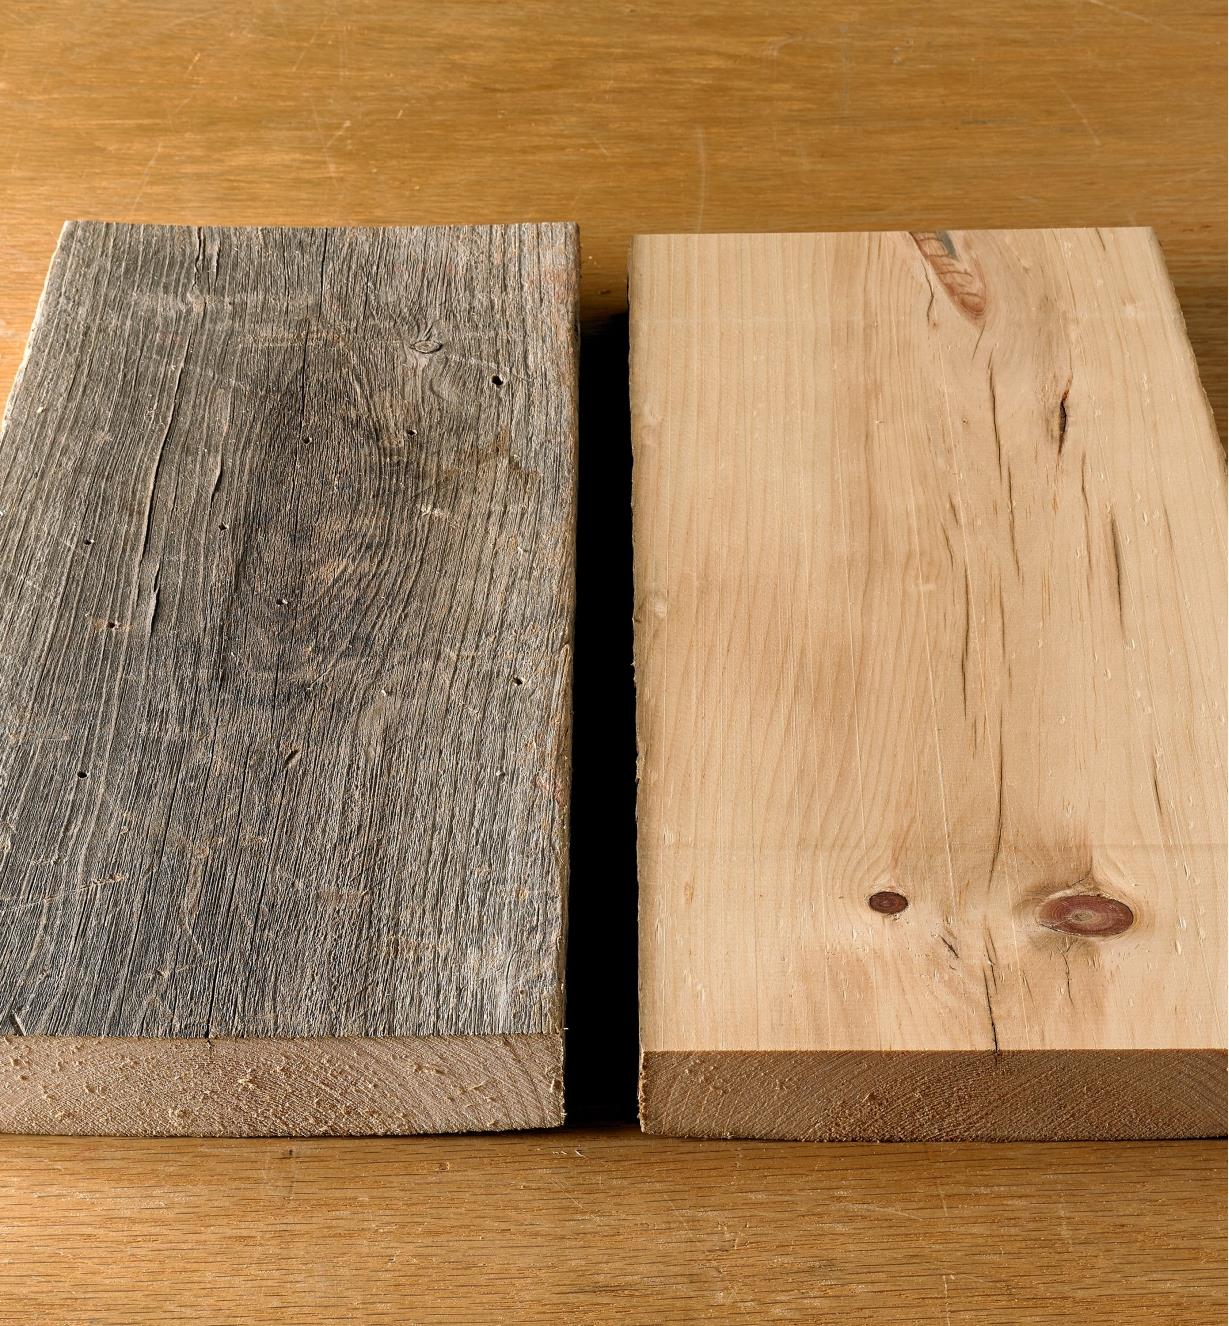 Planche de bois brut voilée à gauche; planche lisse et plane à droite